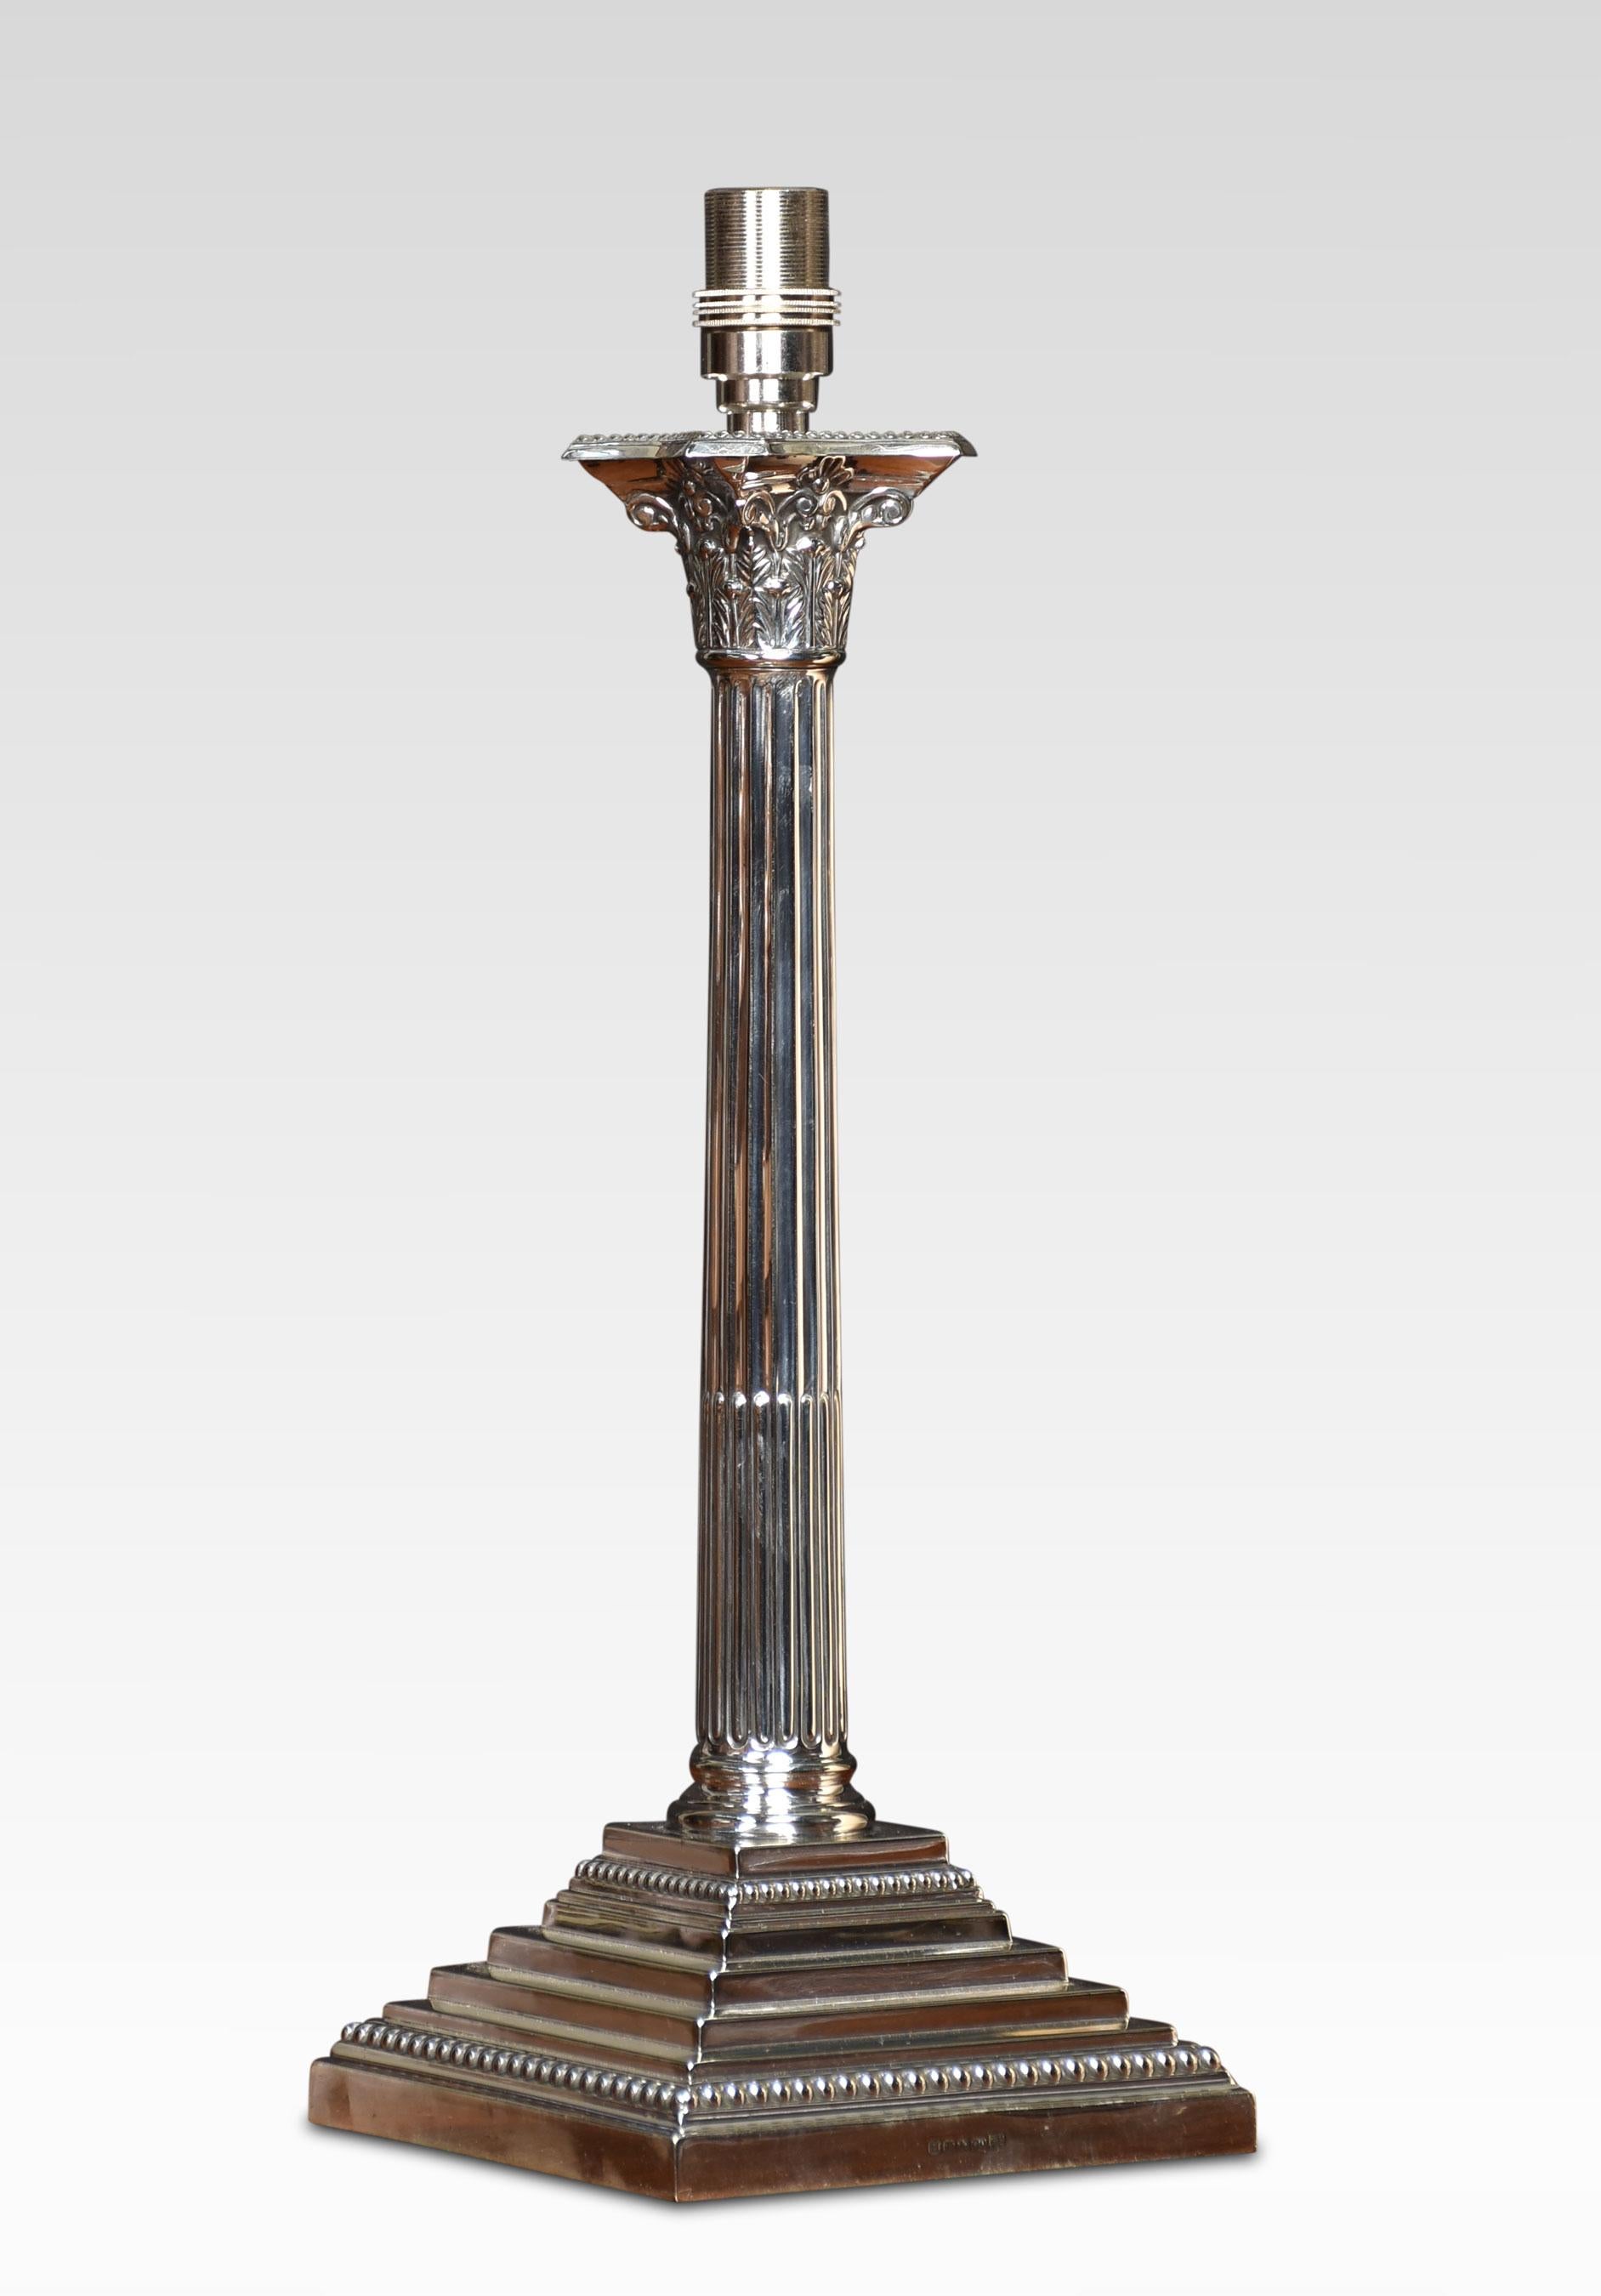 Tischlampe aus Silberblech mit korinthischer Säule auf quadratischem Stufensockel. Die Lampe wurde neu verkabelt.
Abmessungen
Höhe 16,5 Zoll
Breite 6 Zoll
Tiefe 6 Zoll.